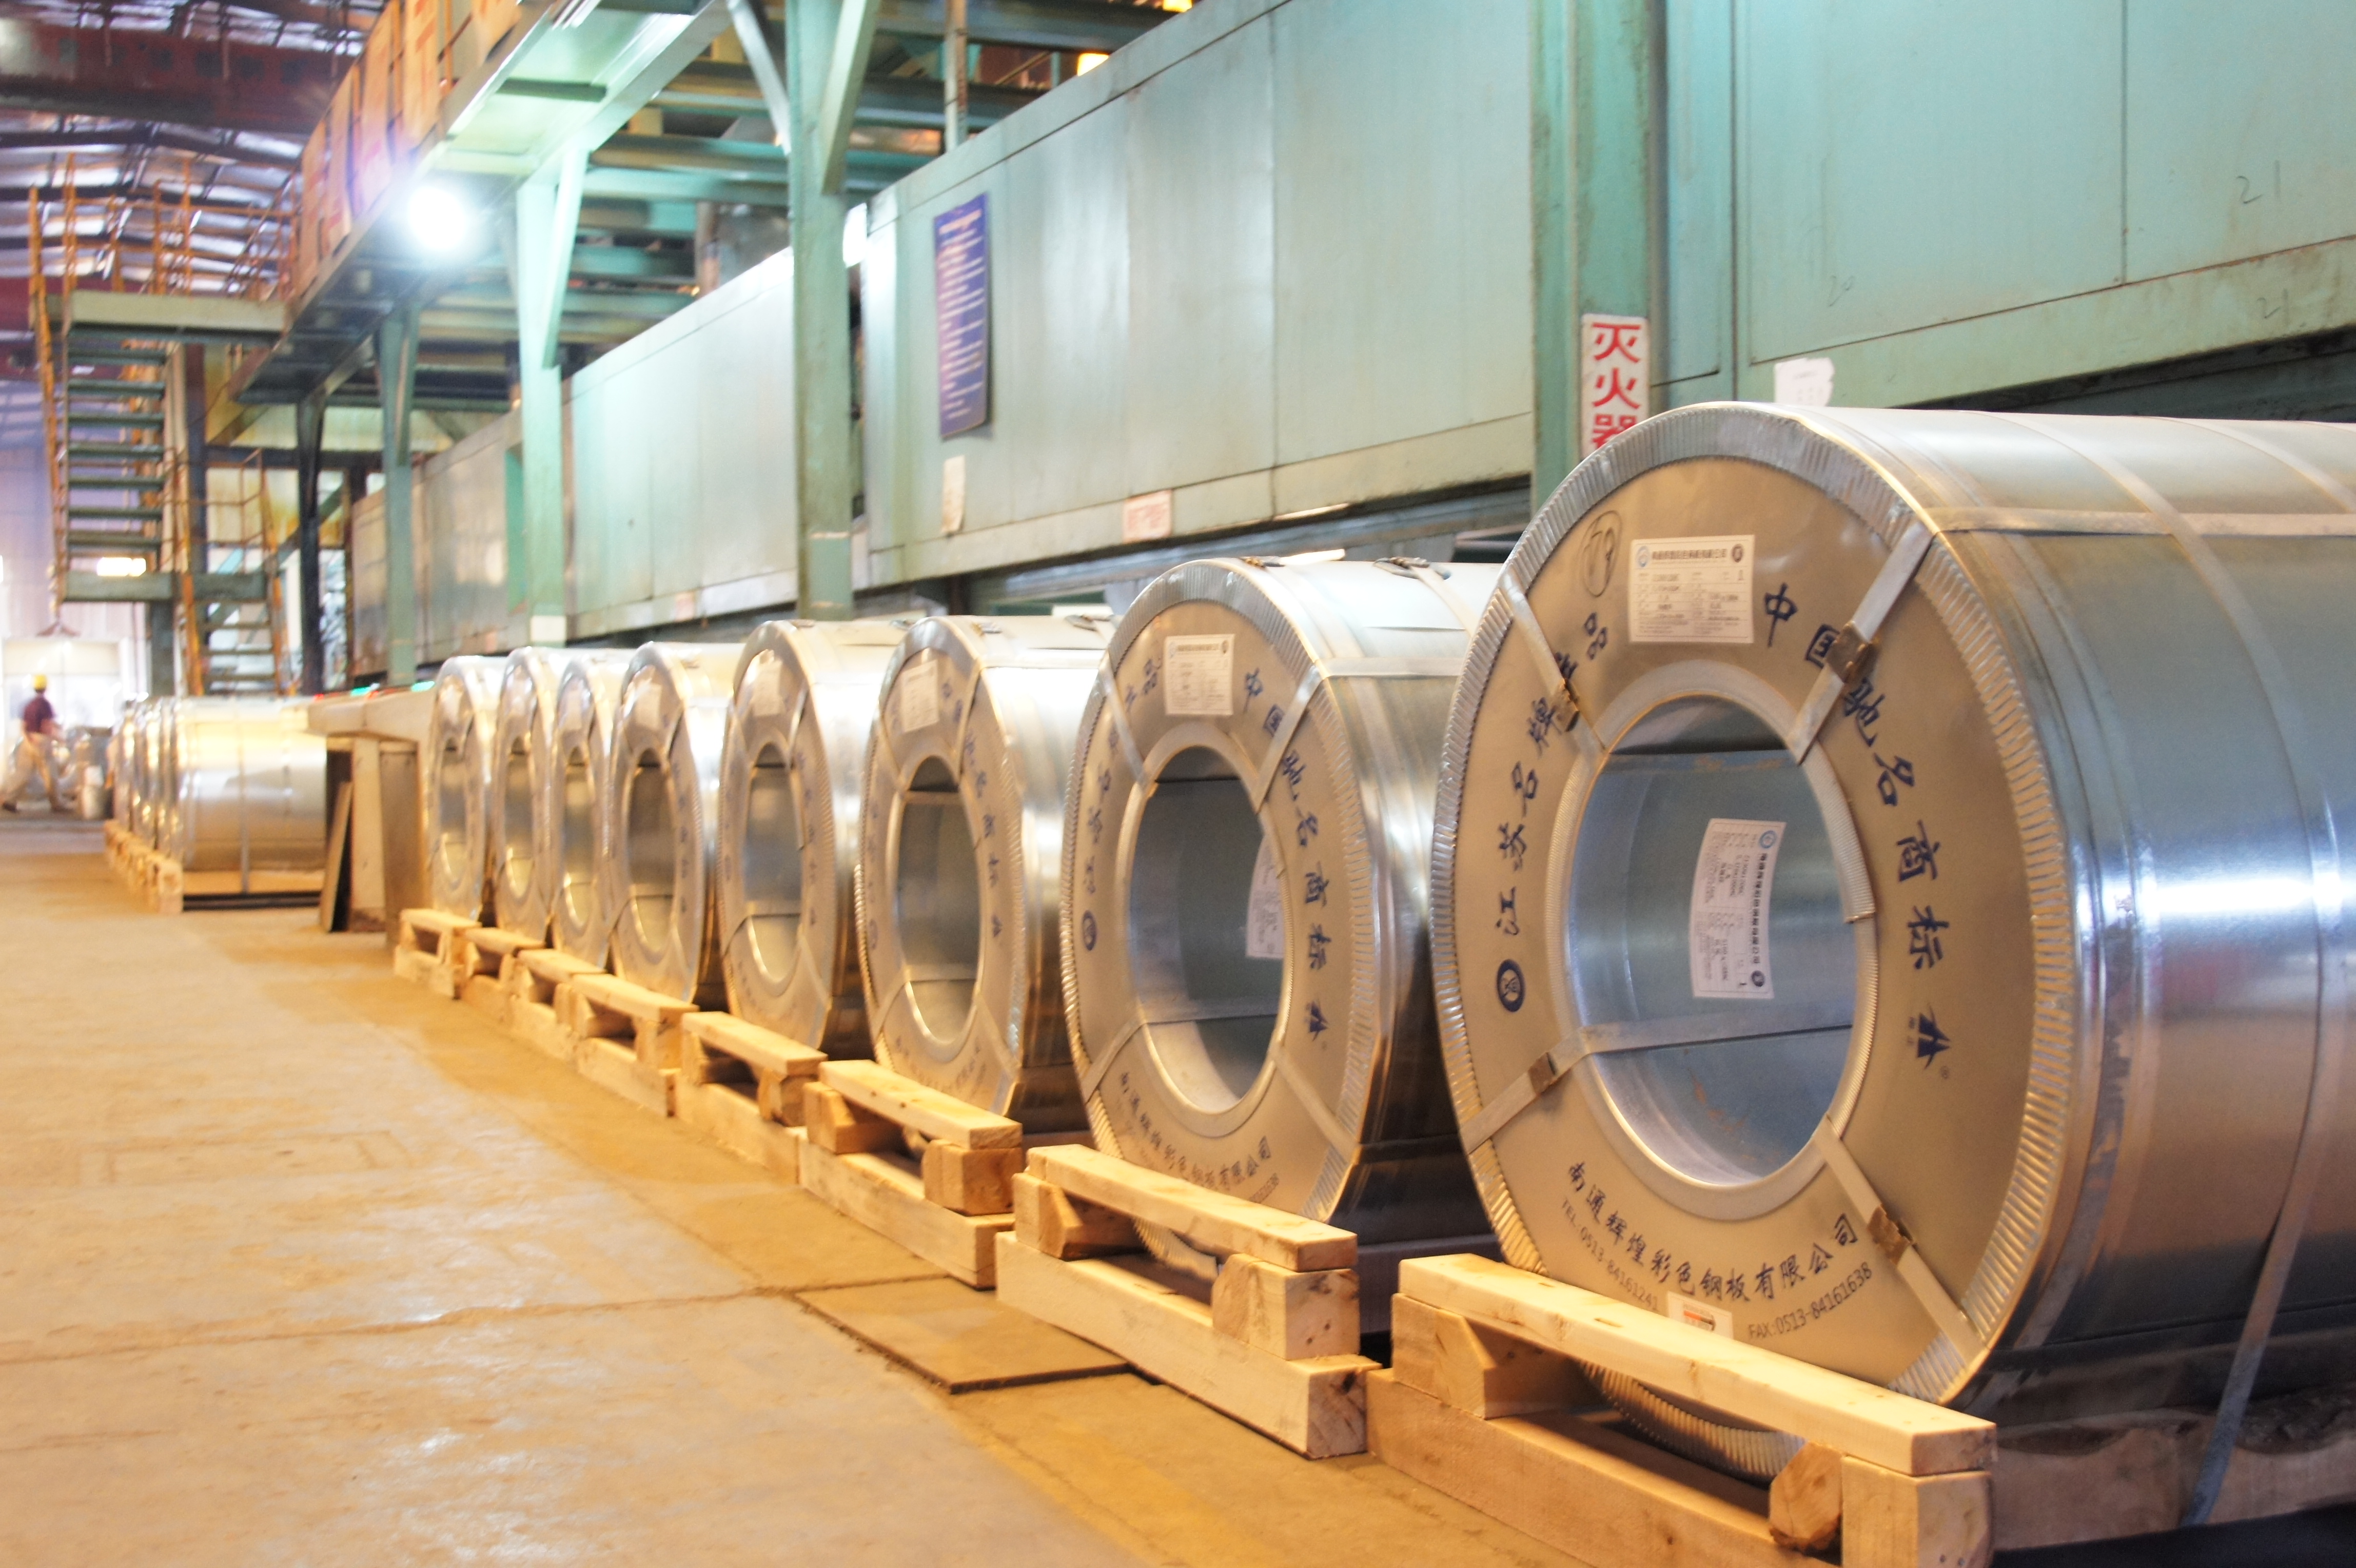 高耐腐彩钢板生产厂家锌镁铝批发 钢结构热电厂专用